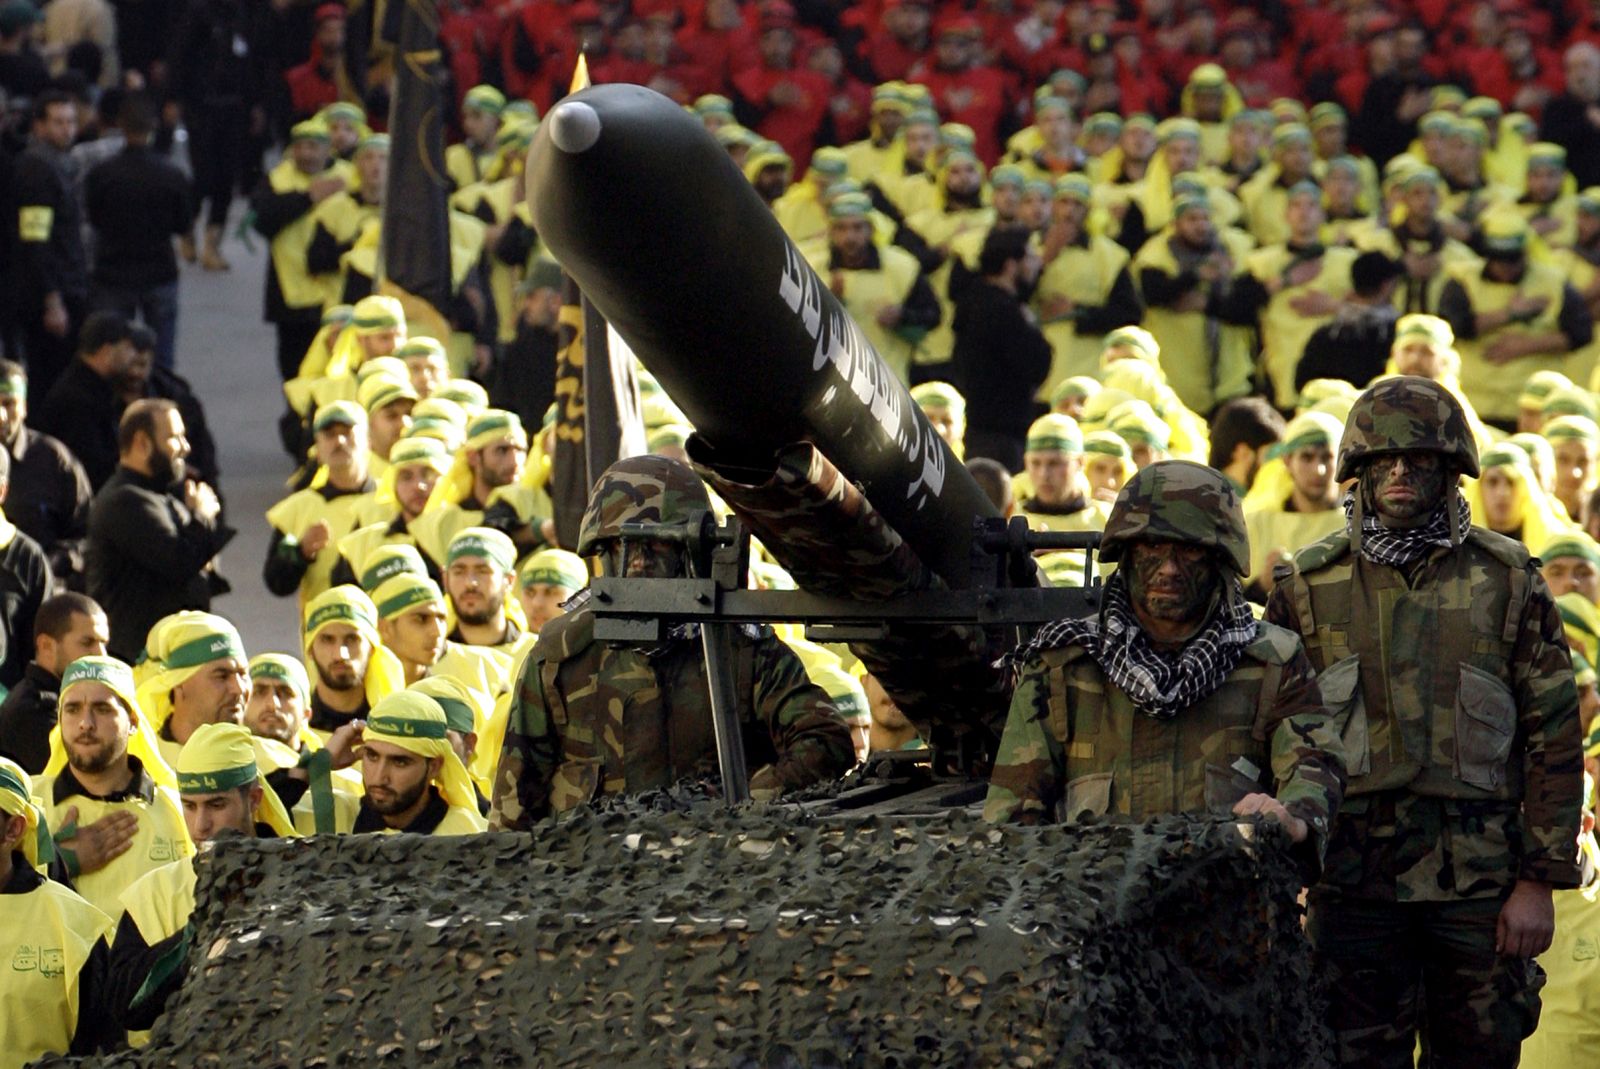 حزب الله من ذراع إيران الأقوى إلى خاصرة إيران الرخوة